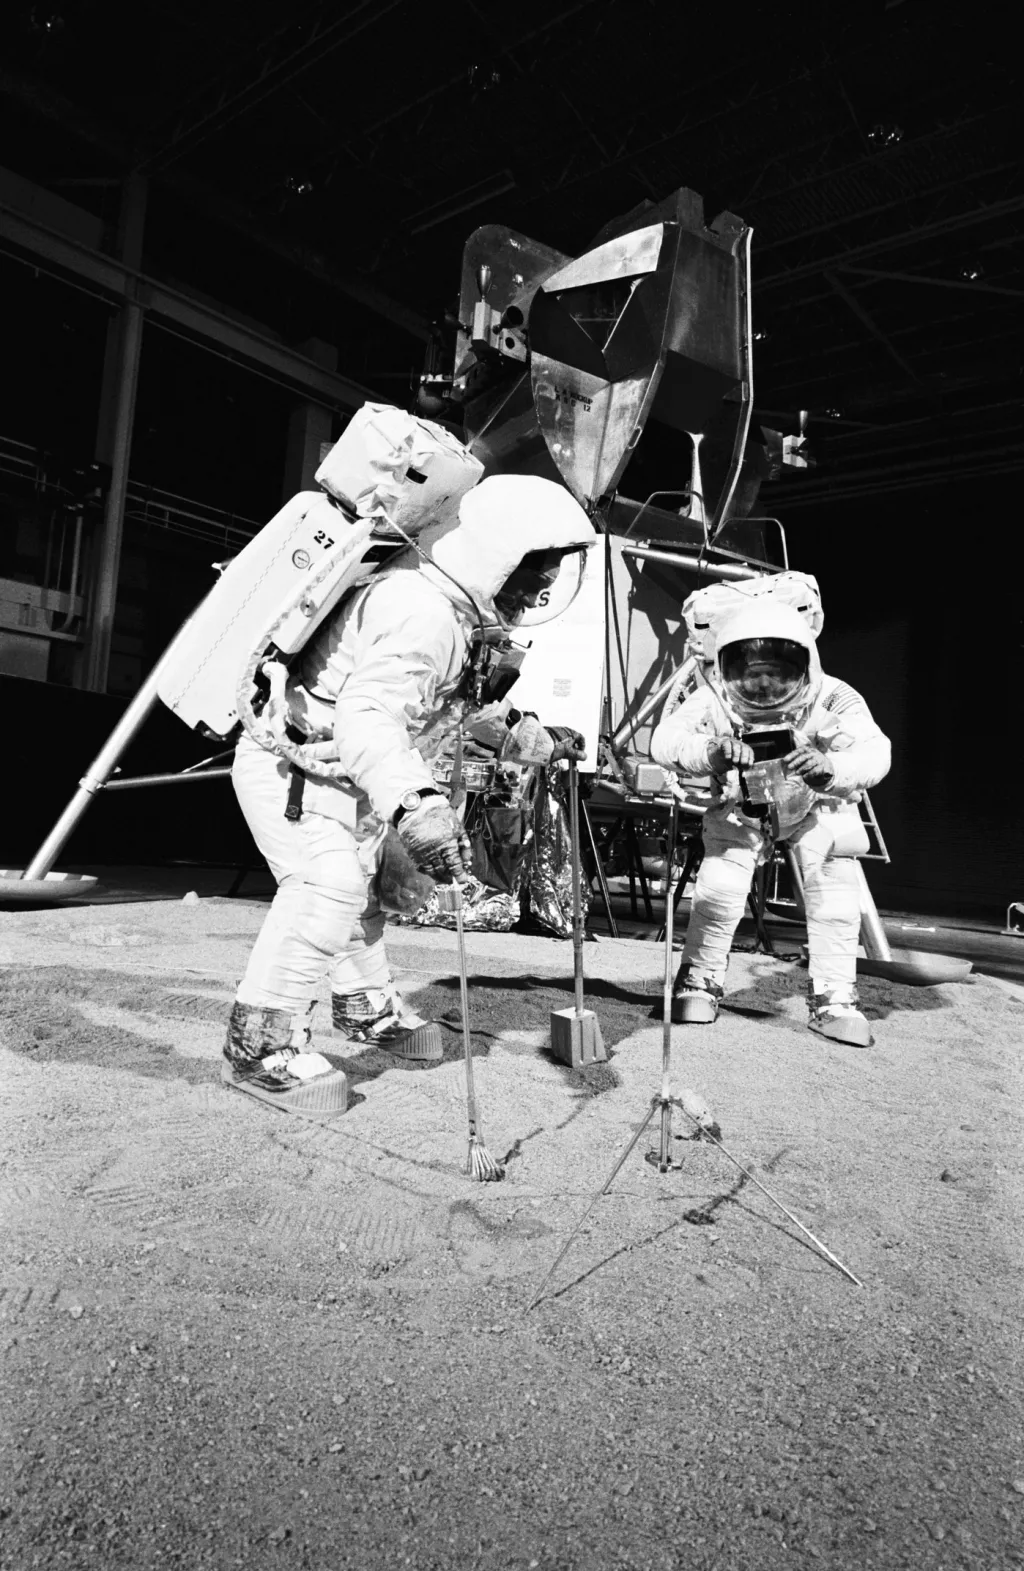 Dva členové mise se účastní tréninku používání měsíčních nástrojů na povrchu Měsíce. Zkouška proběhla v uzavřené budově dne 22. dubna 1969. Ke sběru vzorků jsou použity lopatka, kleště a pytel k převozu.